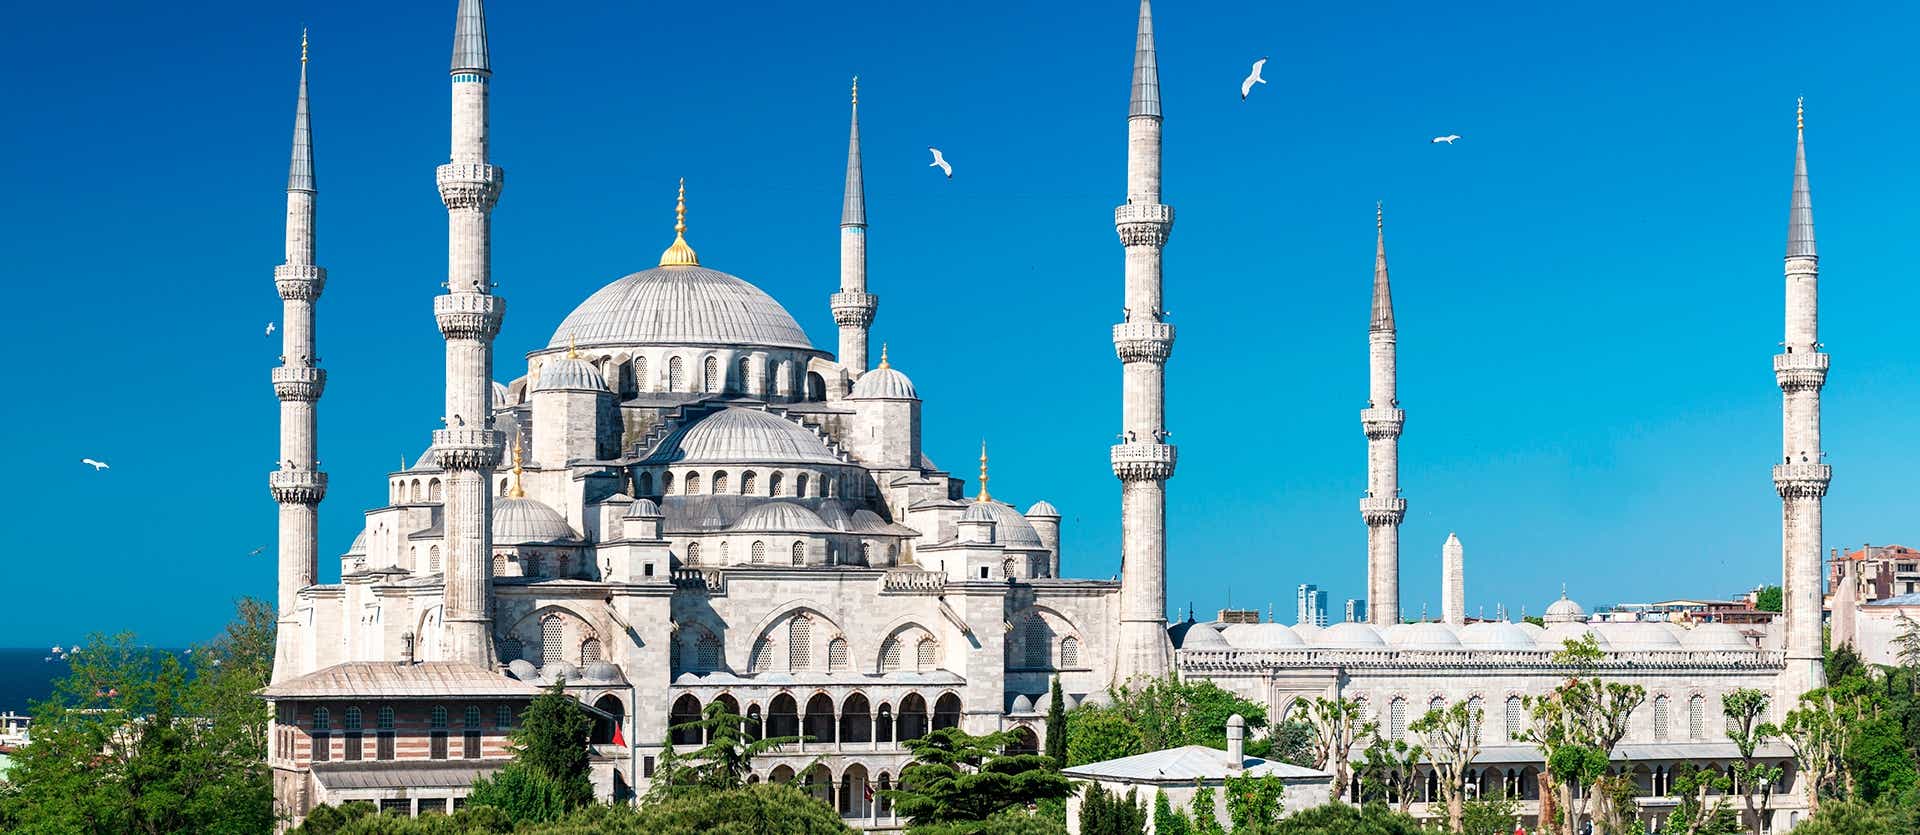 Blue Mosque <span class="iconos separador"></span> Istanbul <span class="iconos separador"></span> Turkey